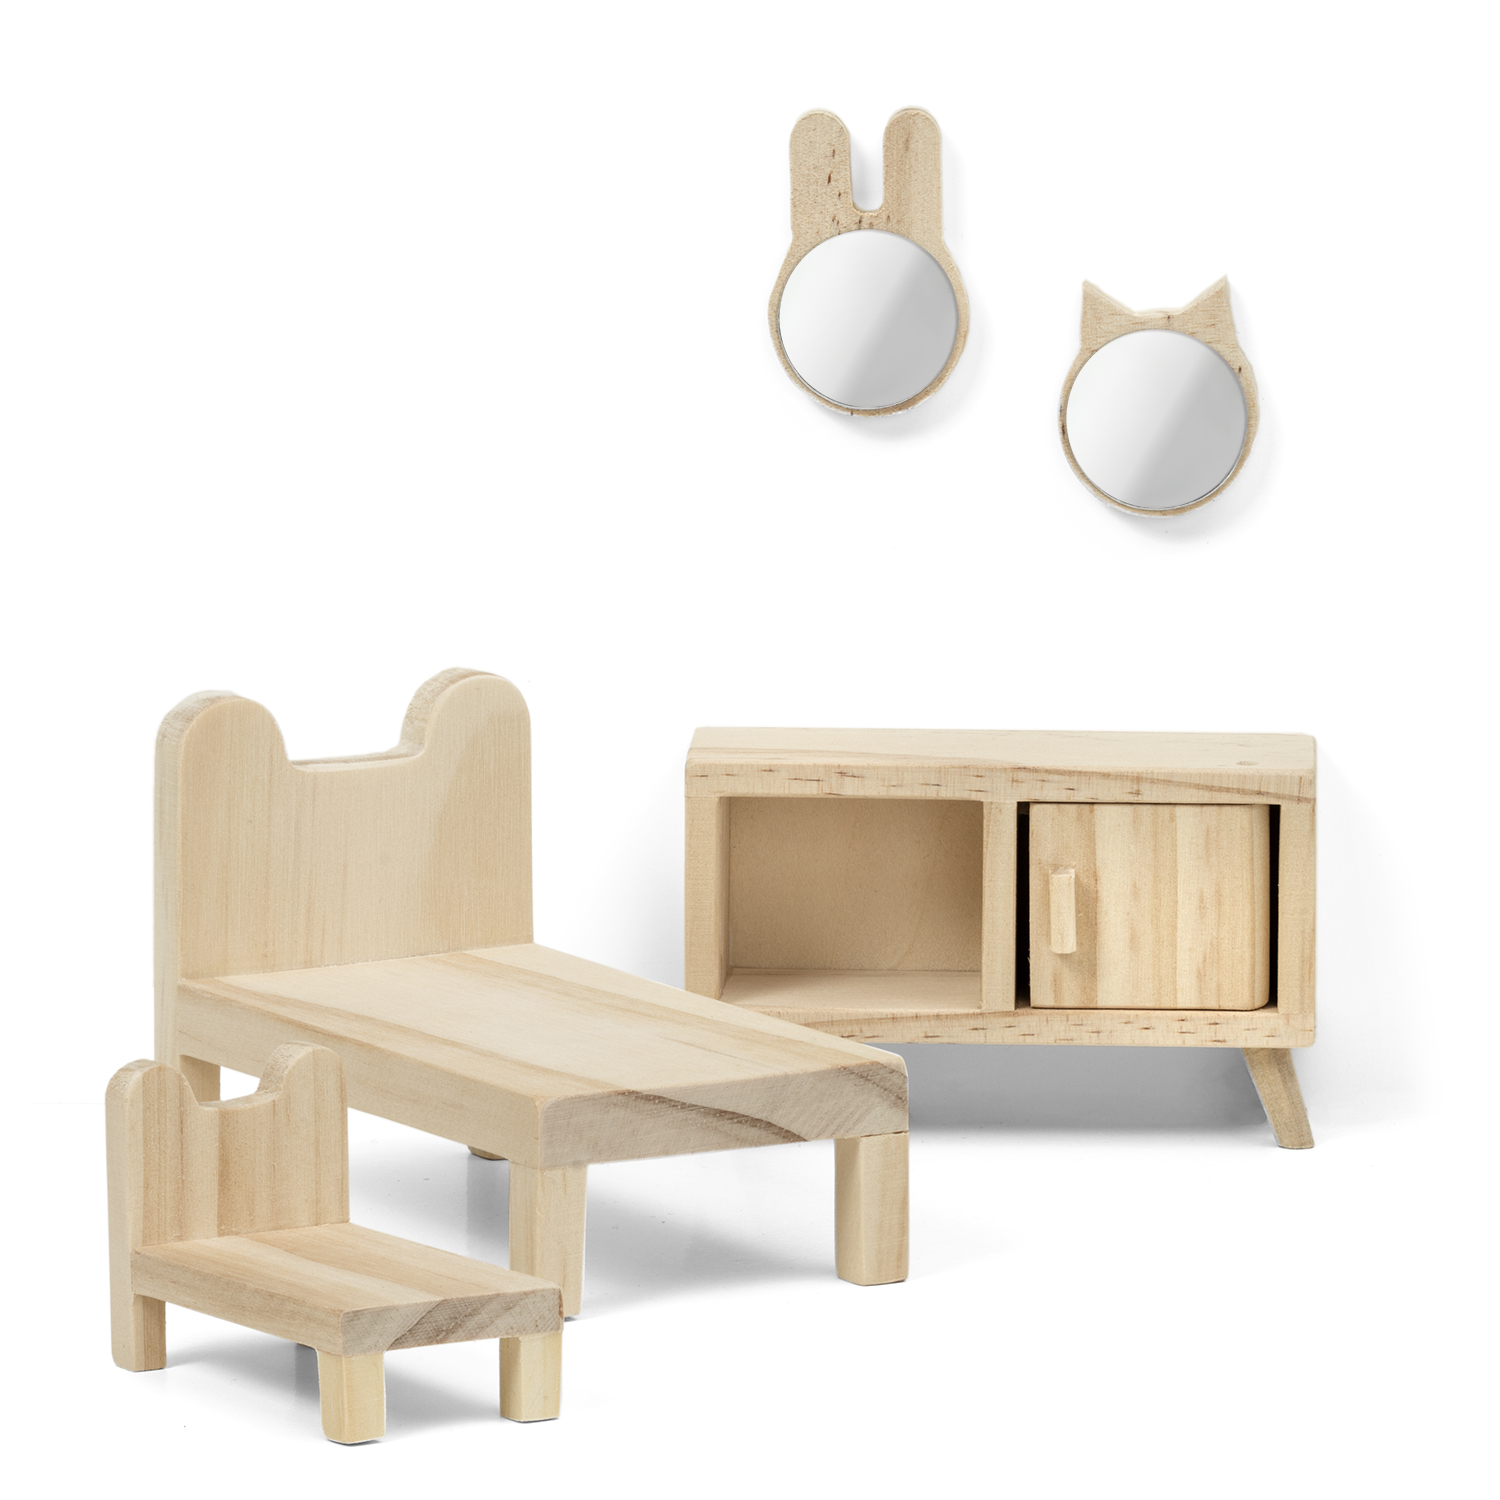 Outlet lundby dollhouse furniture bedroom set natural wood